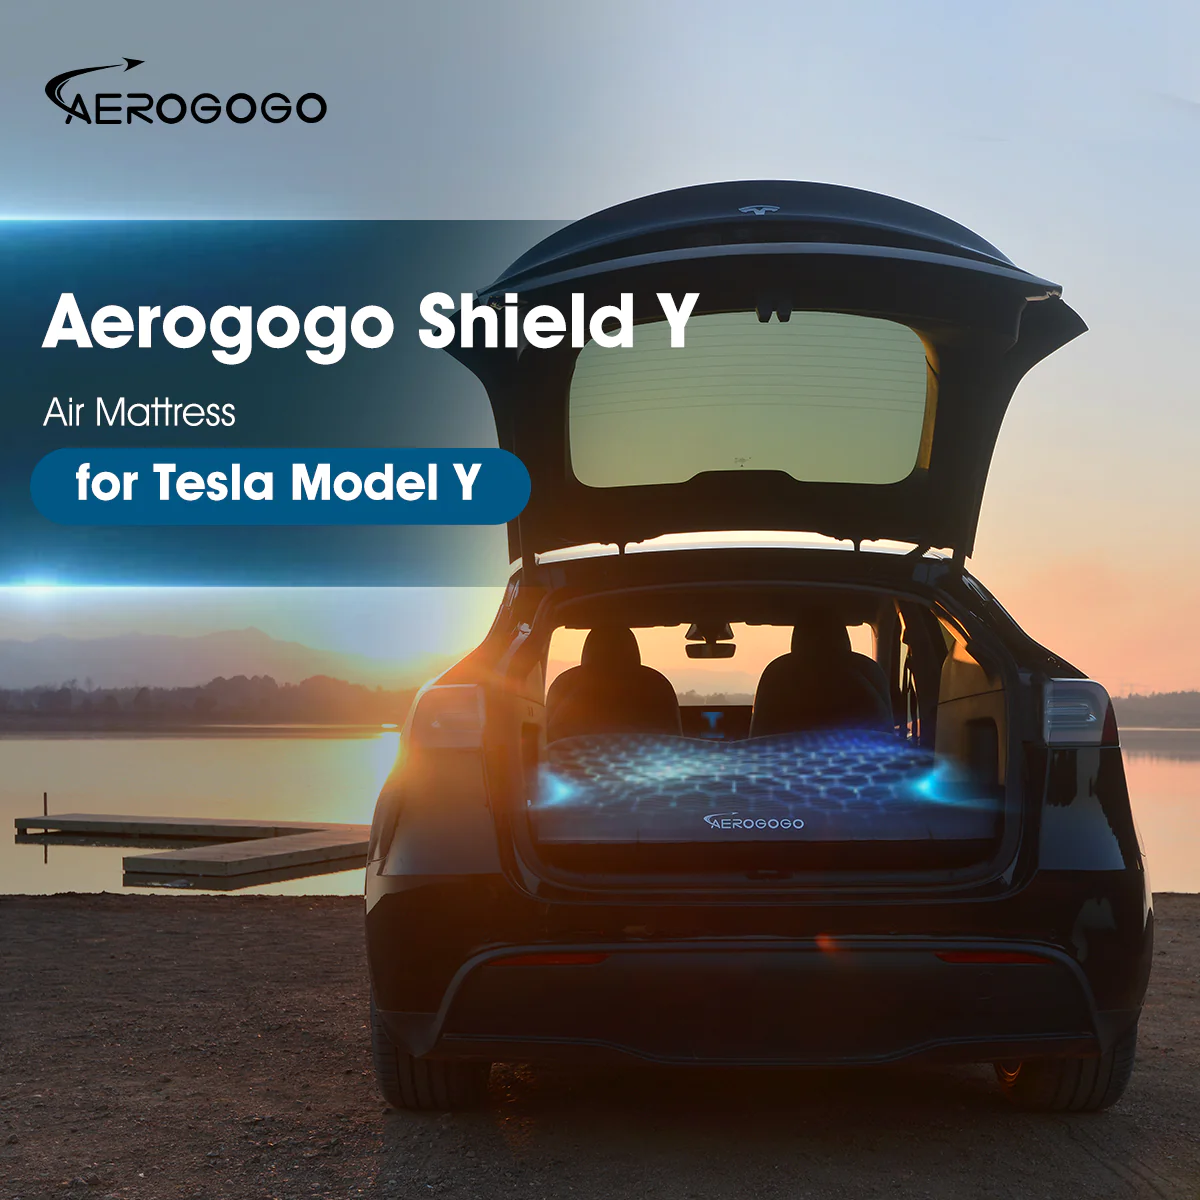 Aerogogo Shield Y 自動充氣氣墊床